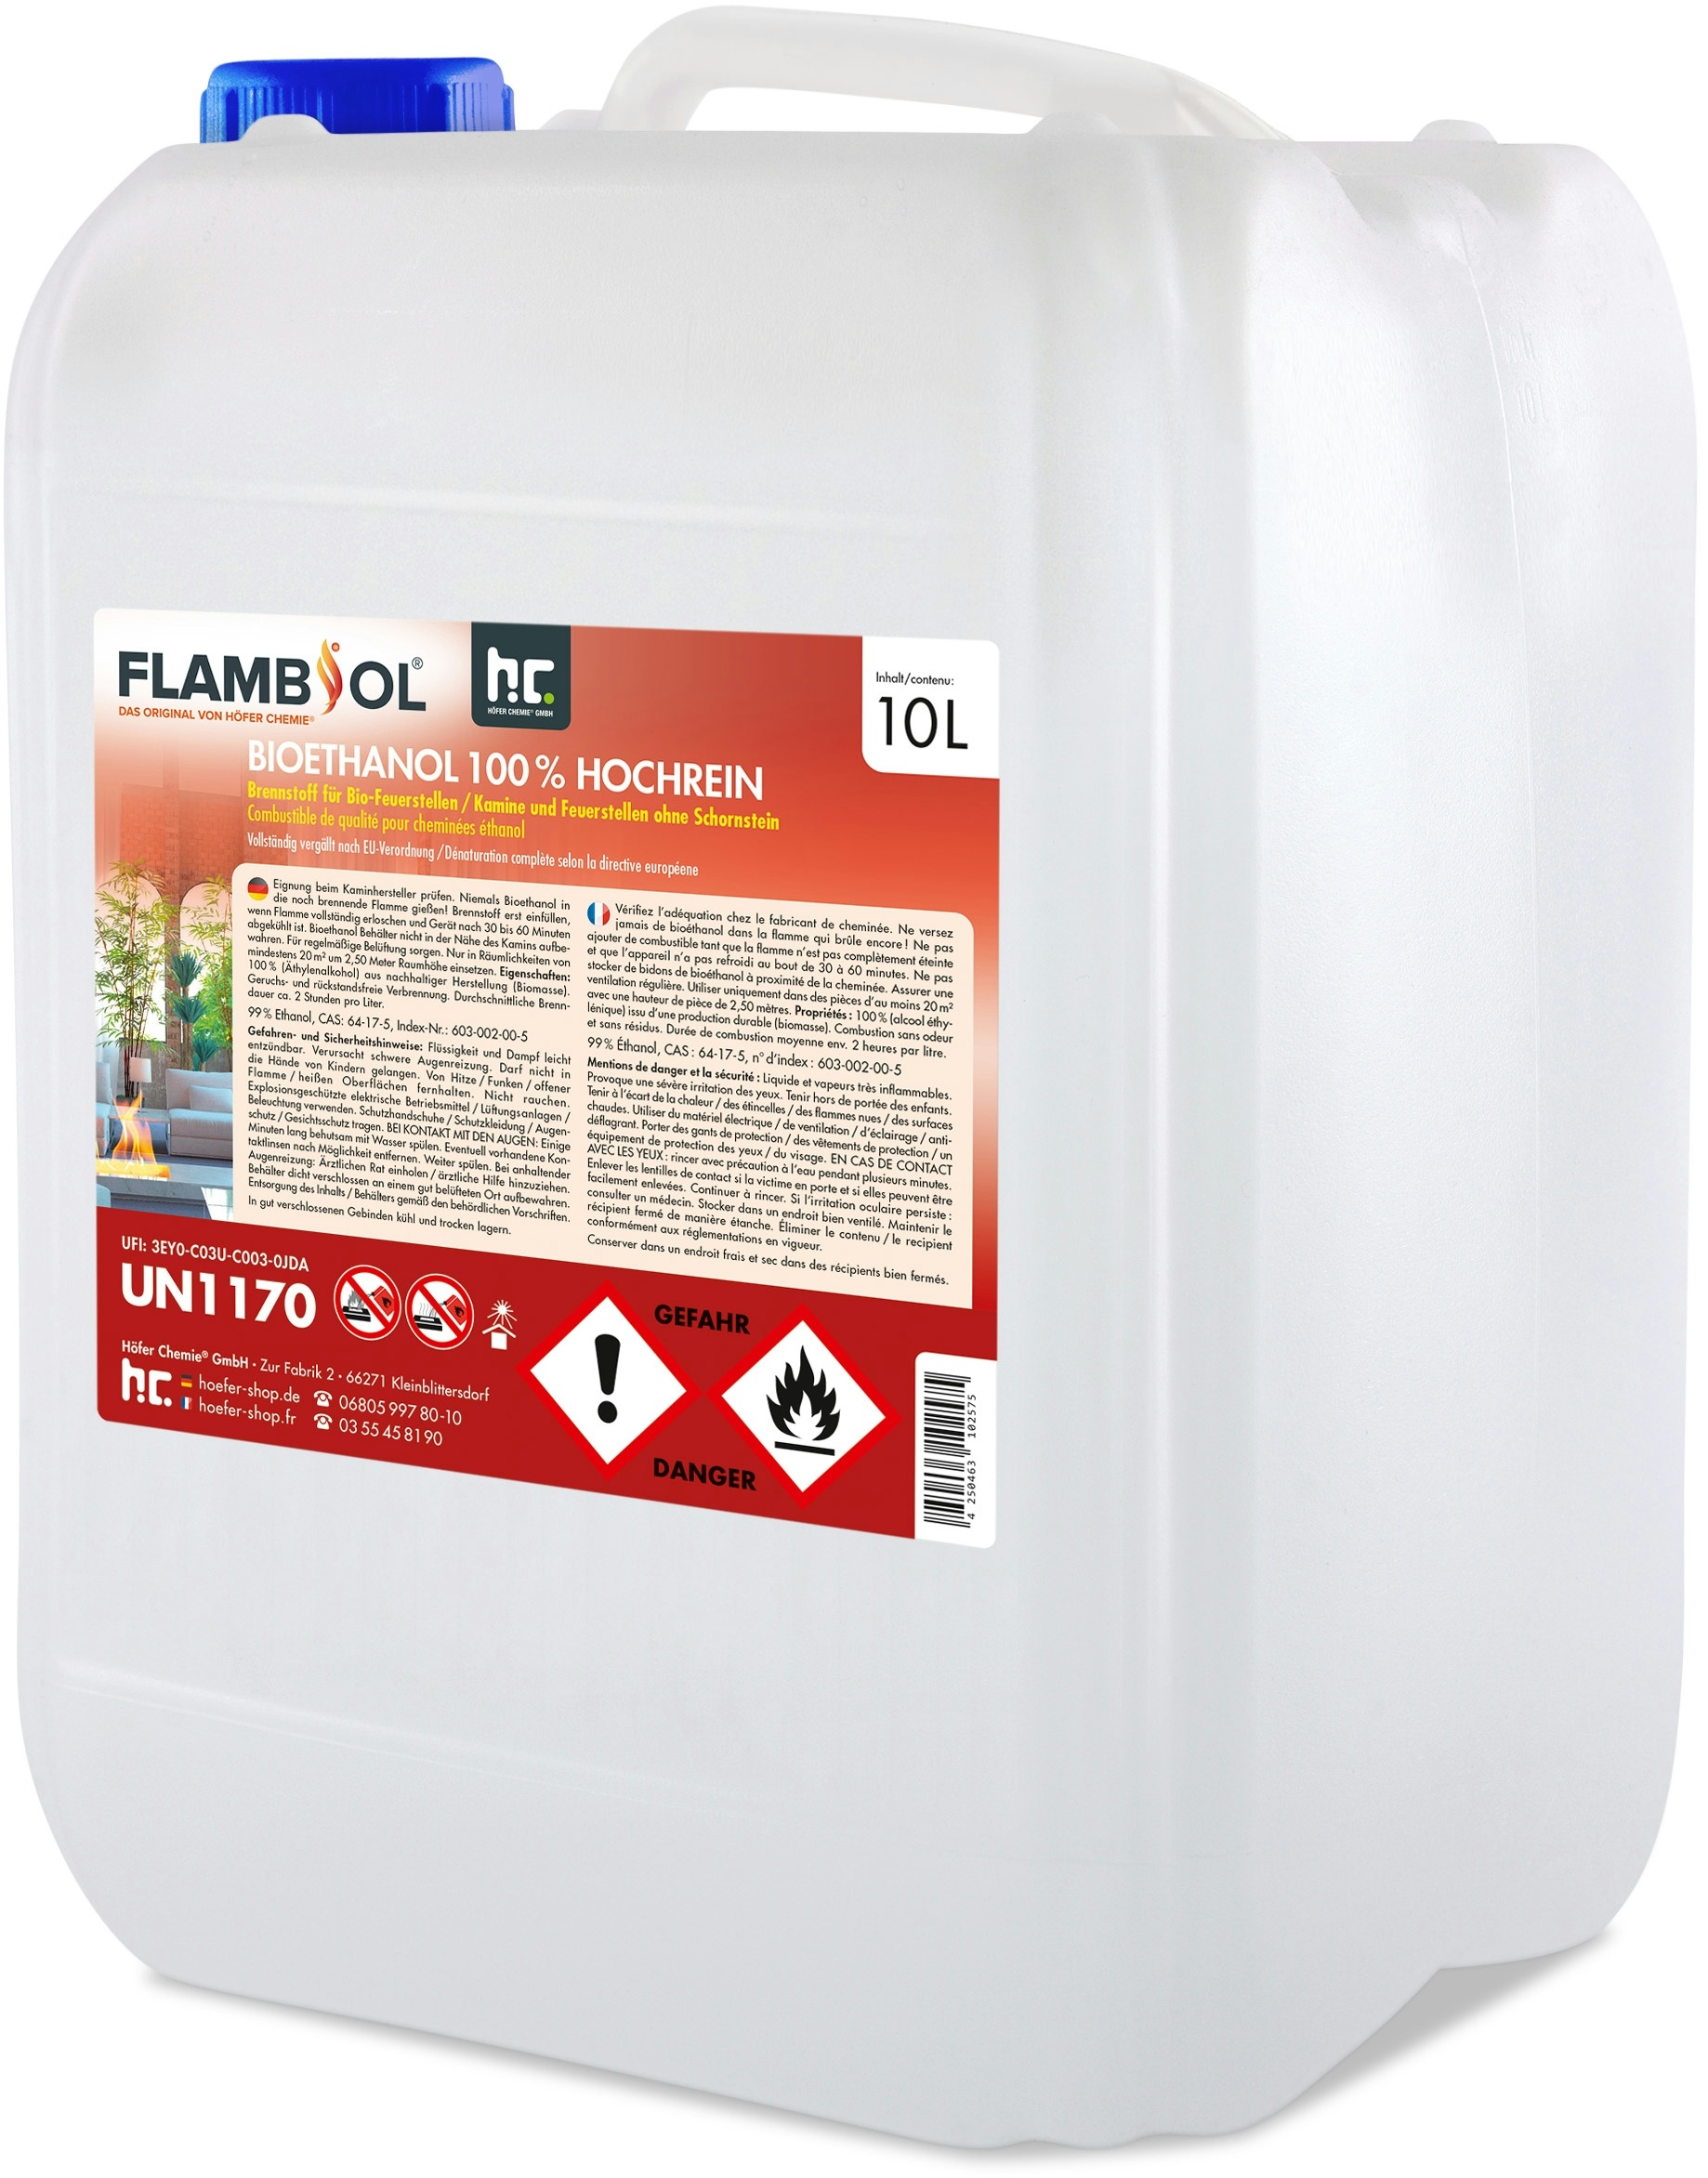 15 x 10 Liter FLAMBIOL® Bioethanol Hochrein 100 % saubere und geruchsfreie Verbrennung